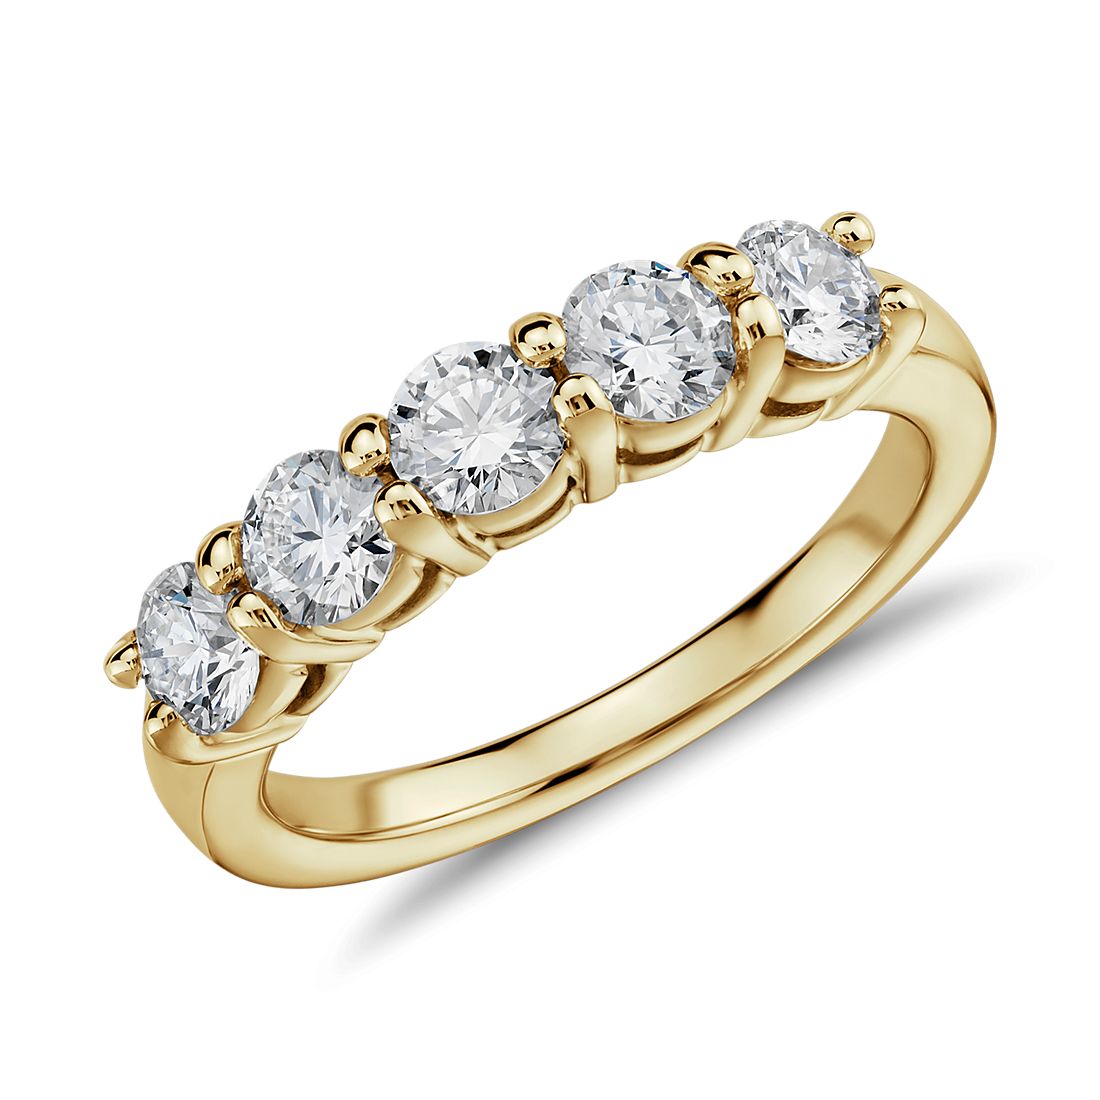 Krivox 5 ct Simulated Diamond 14k Yellow Gold Finish Eternity Wedding Anniversary Band Ring for Women's